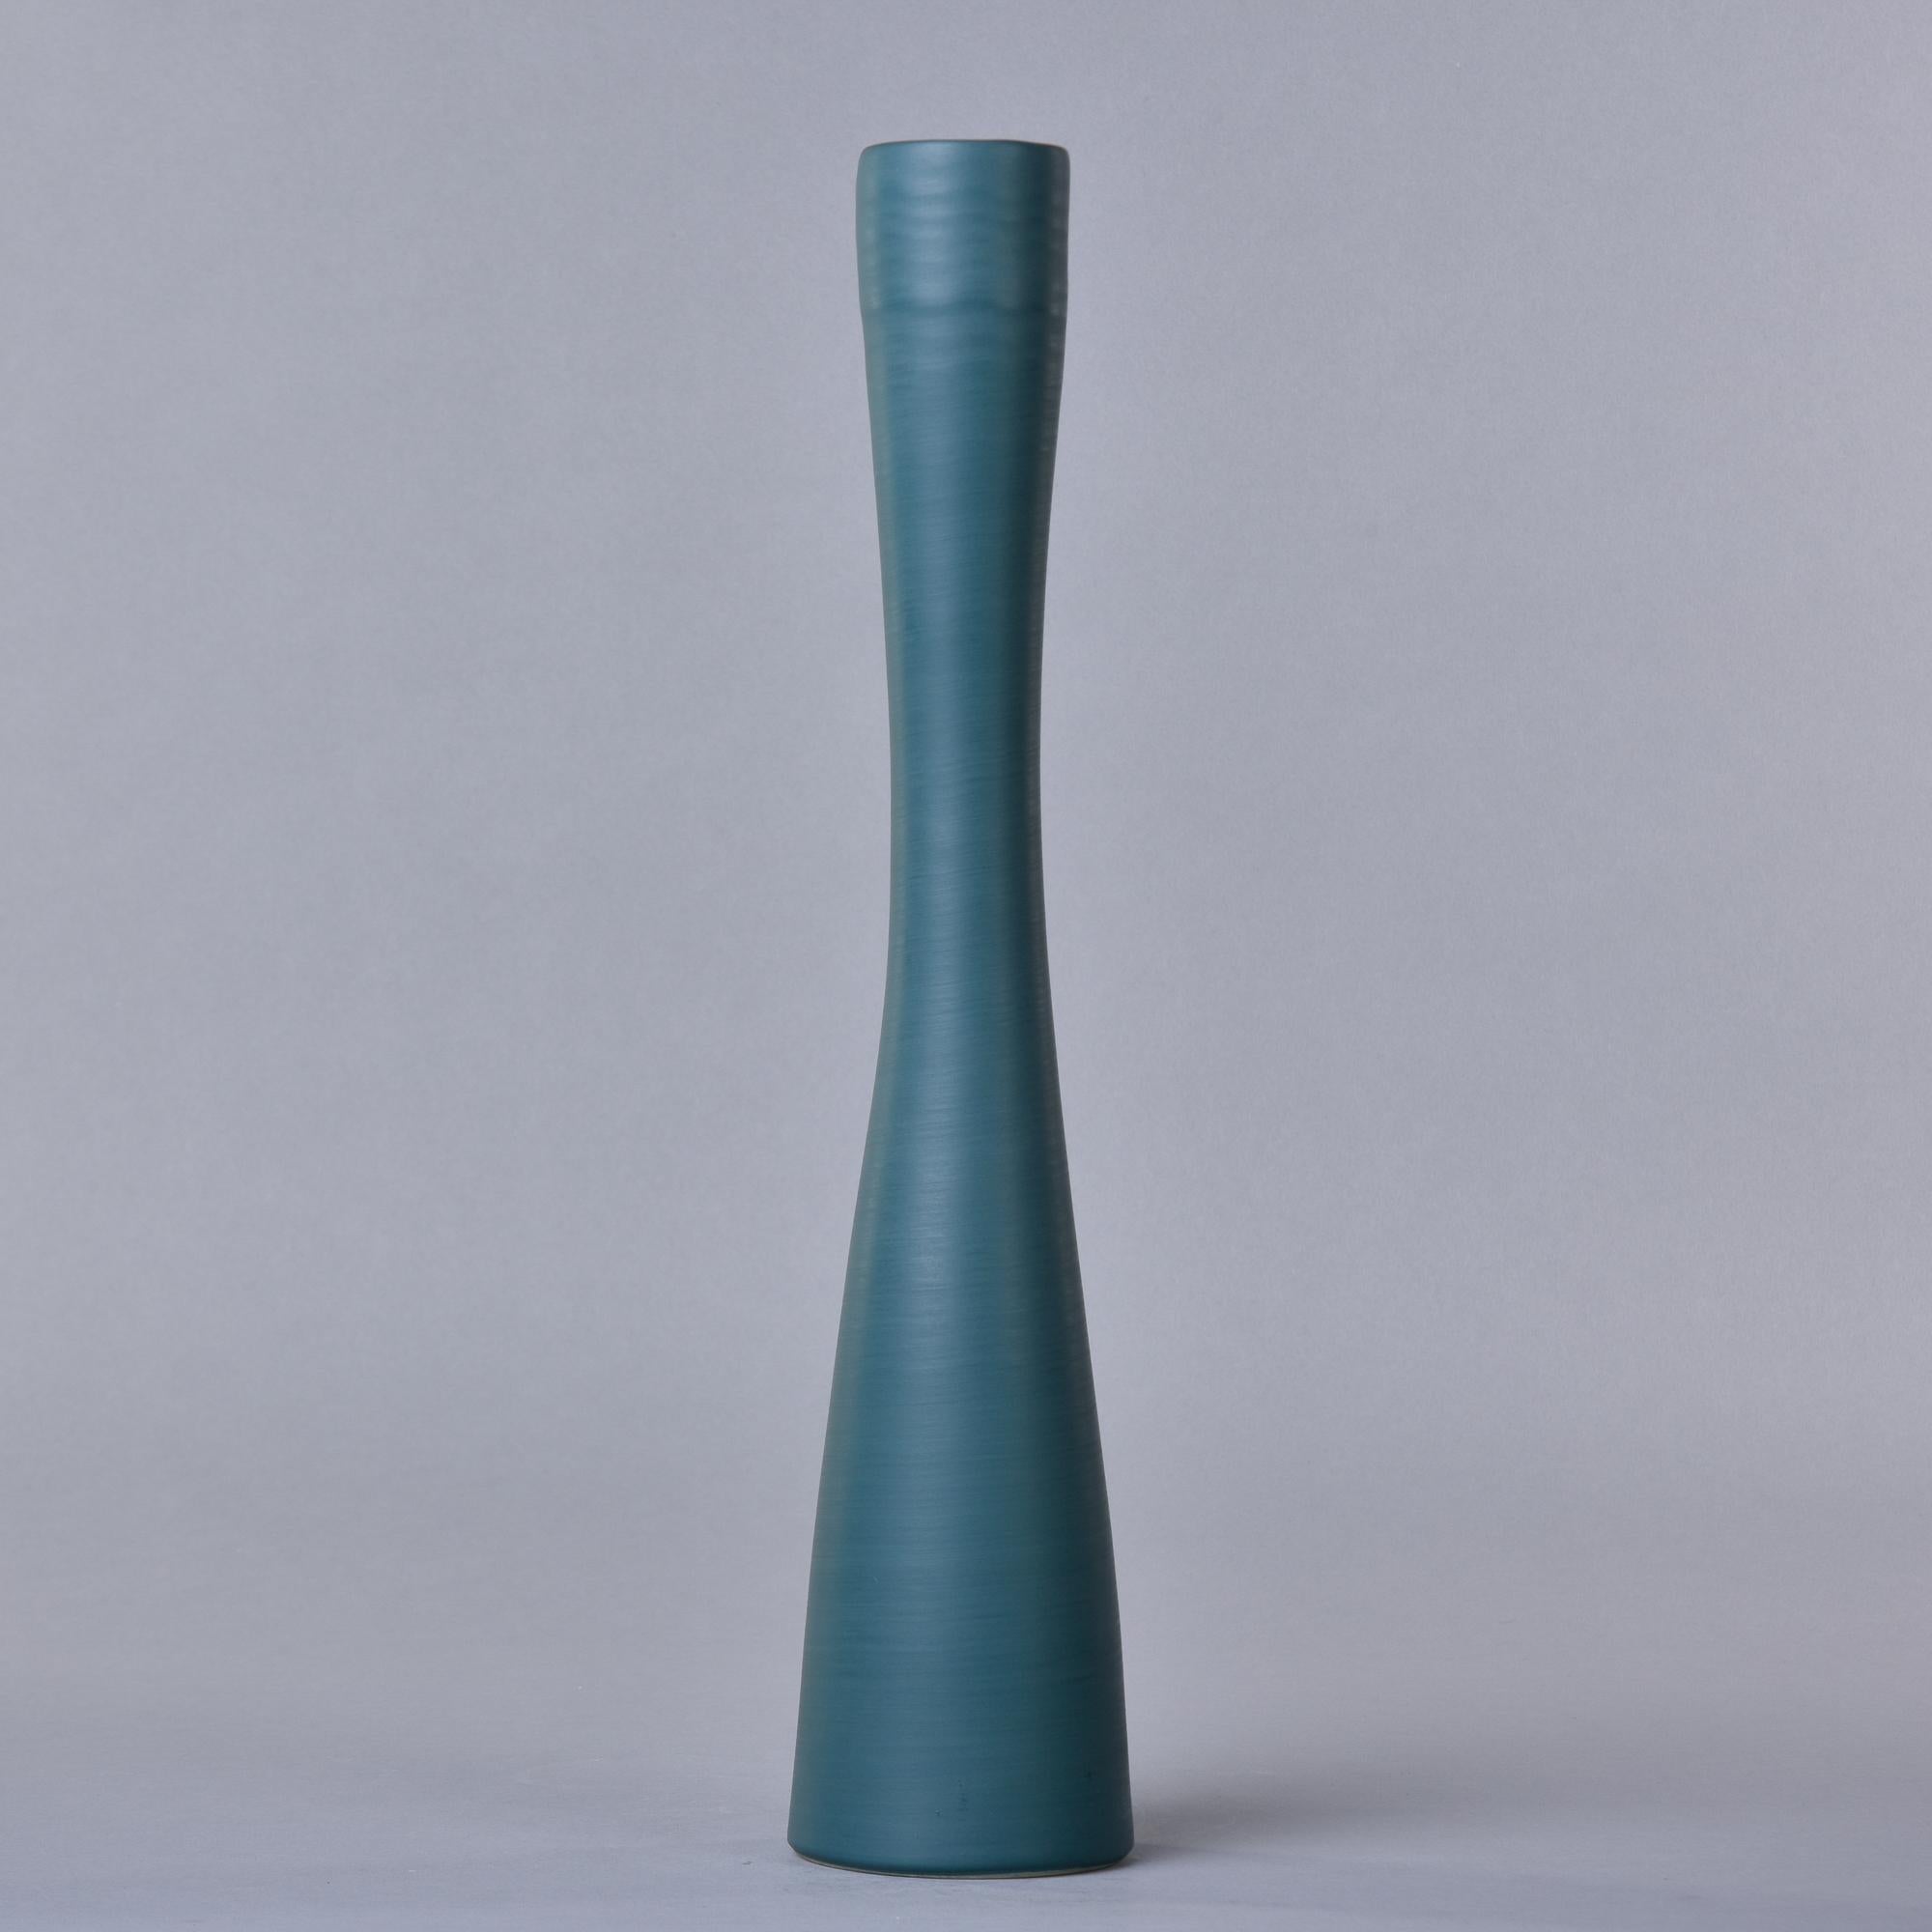 Neu und in Italien von Rina Menardi hergestellt, ist diese große schlanke Vase 18